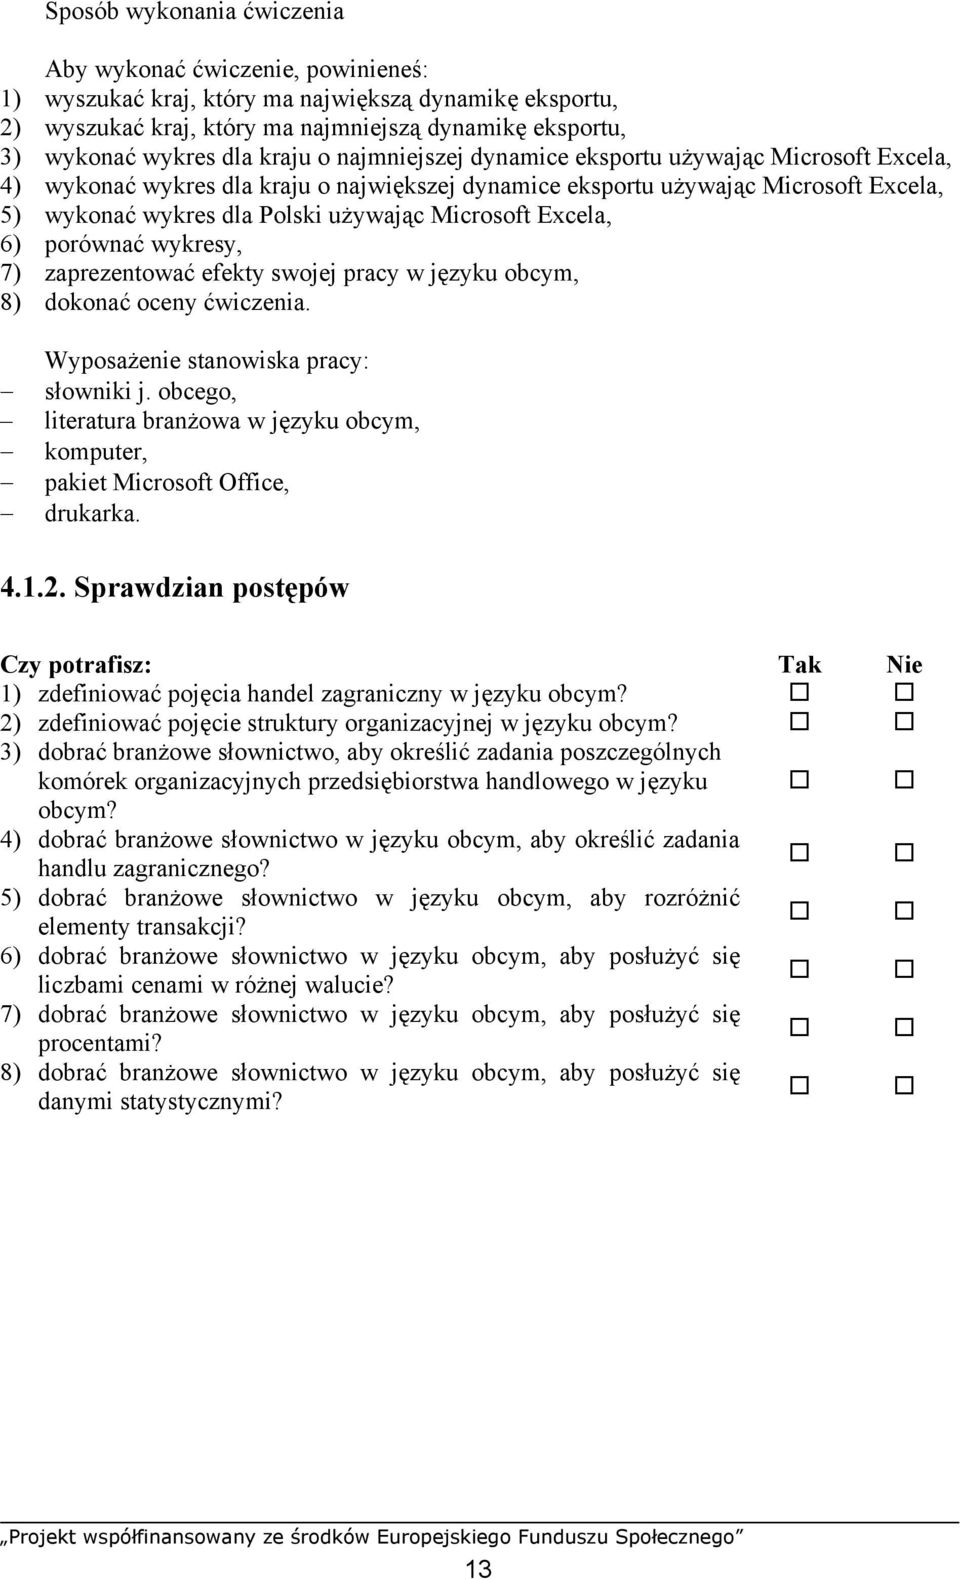 7) zaprezentować efekty swojej pracy w języku obcym, 8) dokonać oceny ćwiczenia. słowniki j. obcego, komputer, pakiet Microsoft Office, drukarka. 4.1.2.